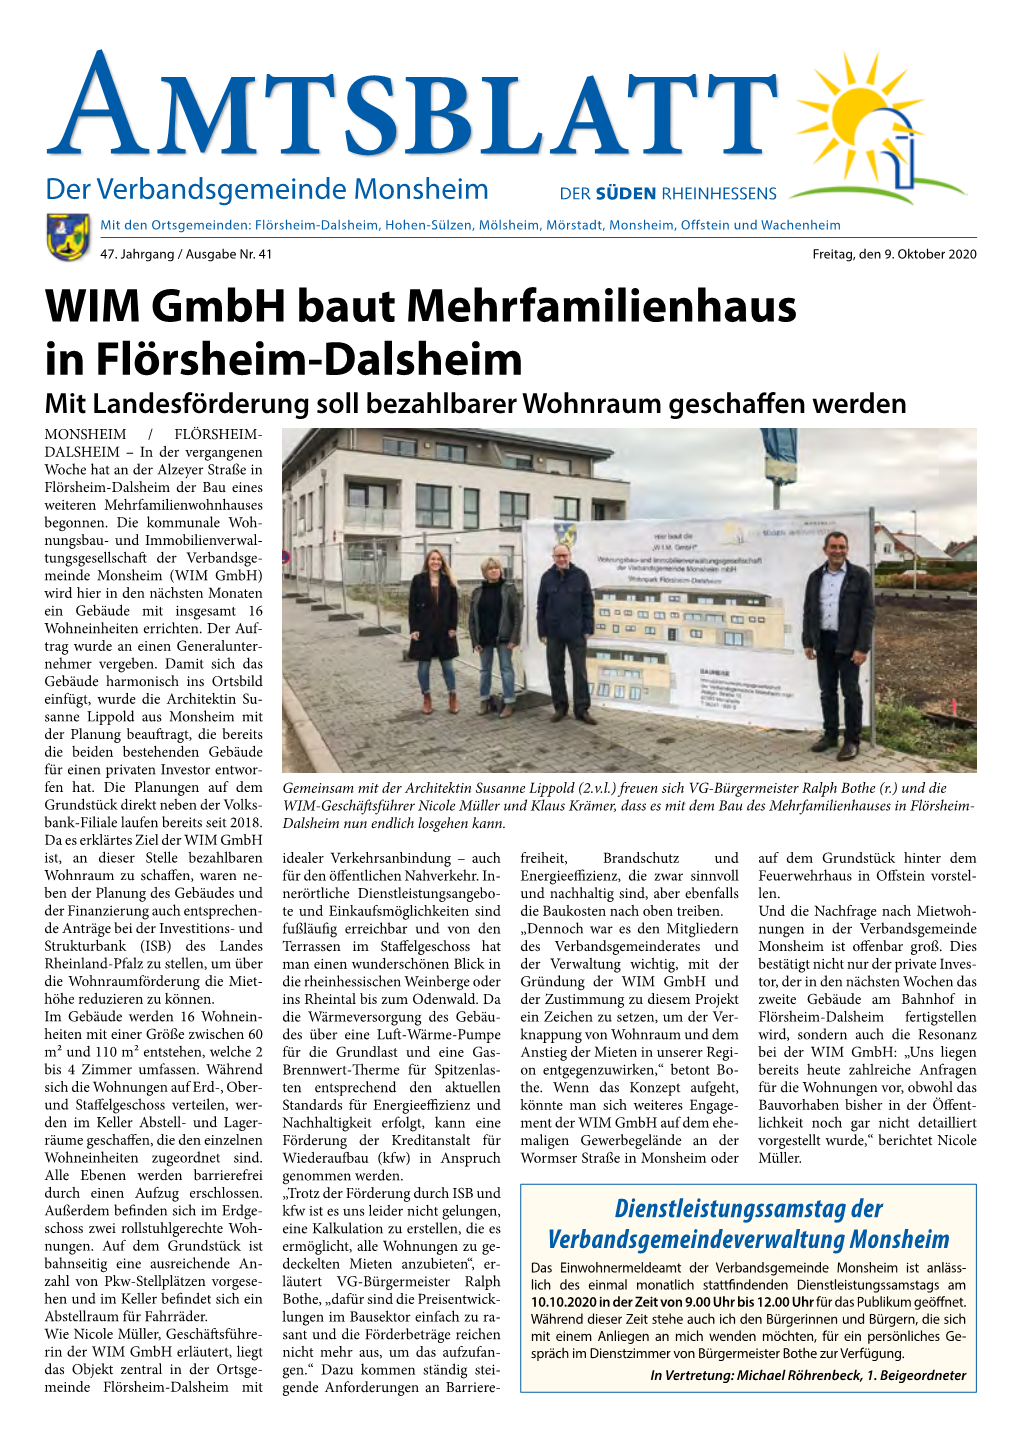 WIM Gmbh Baut Mehrfamilienhaus in Flörsheim-Dalsheim